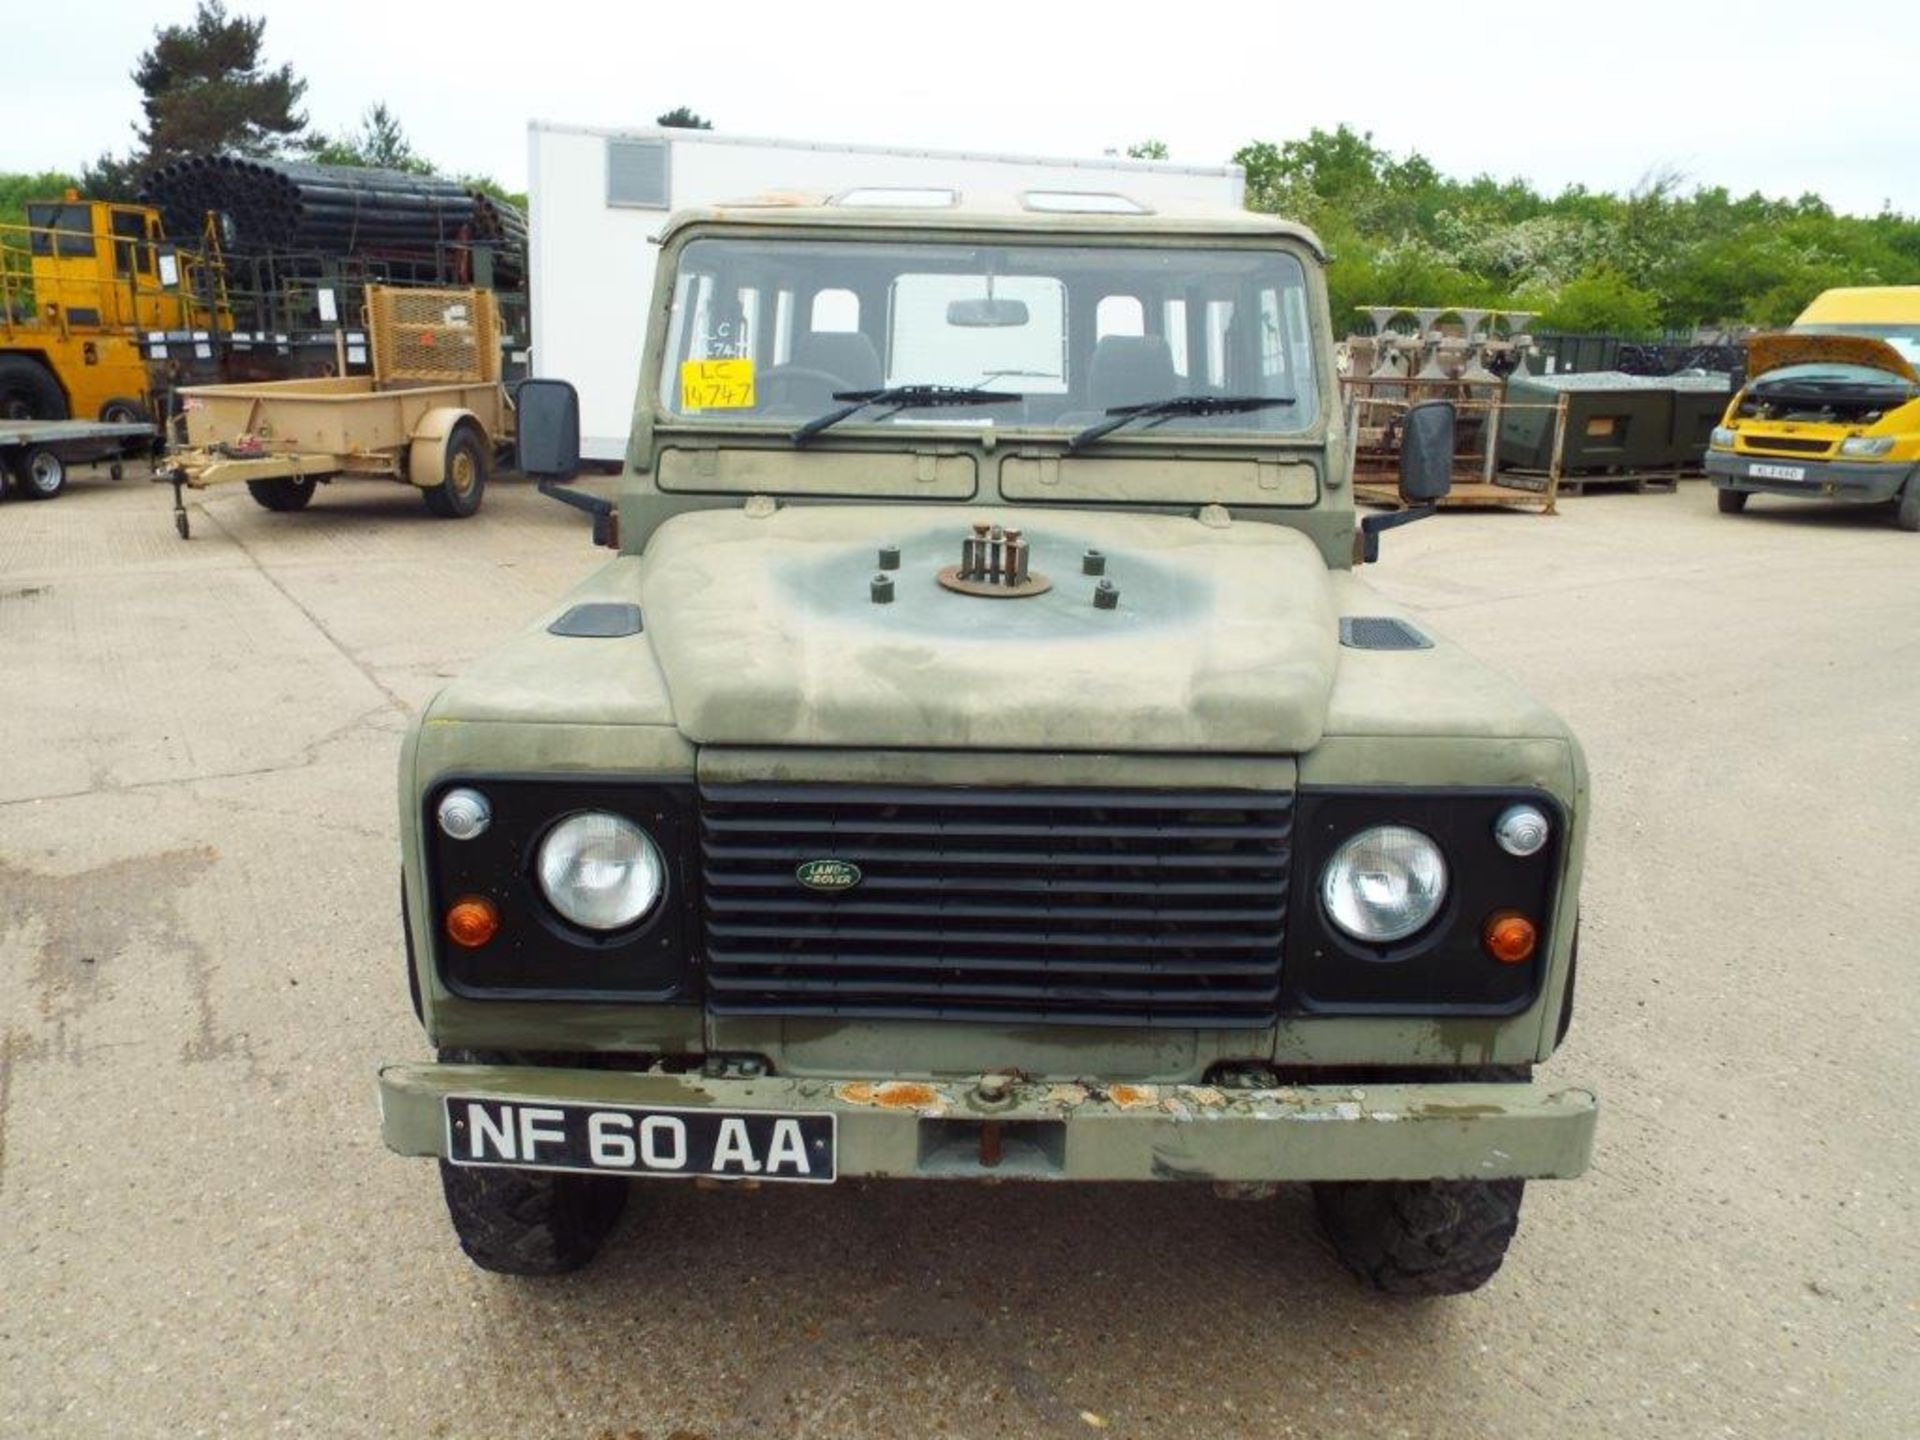 RAF Issue Land Rover Defender 110 300TDi Hard Top - Bild 2 aus 26